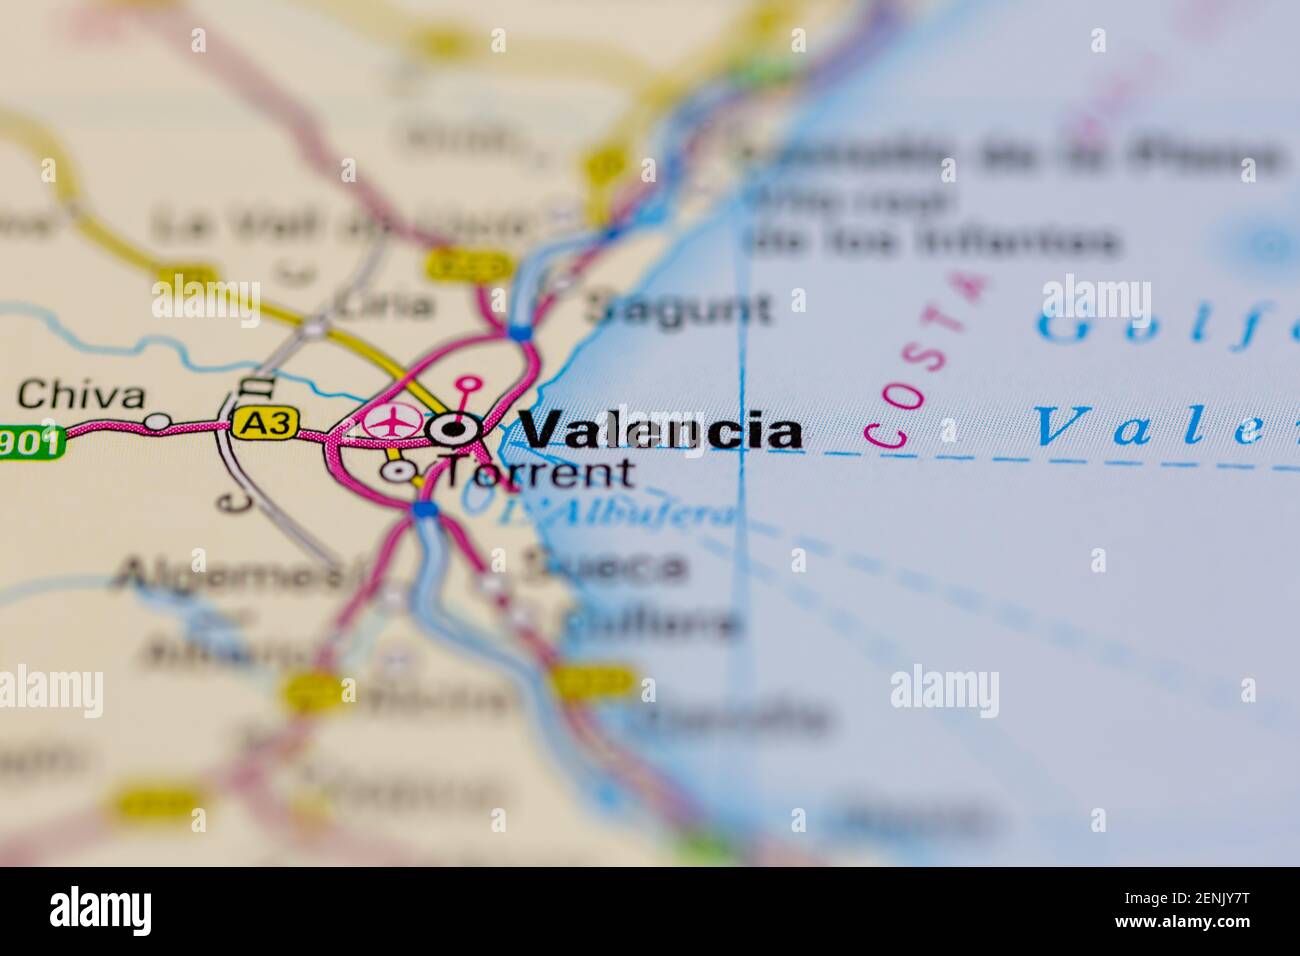 Valence affichée sur une carte routière ou une carte géographique Banque D'Images